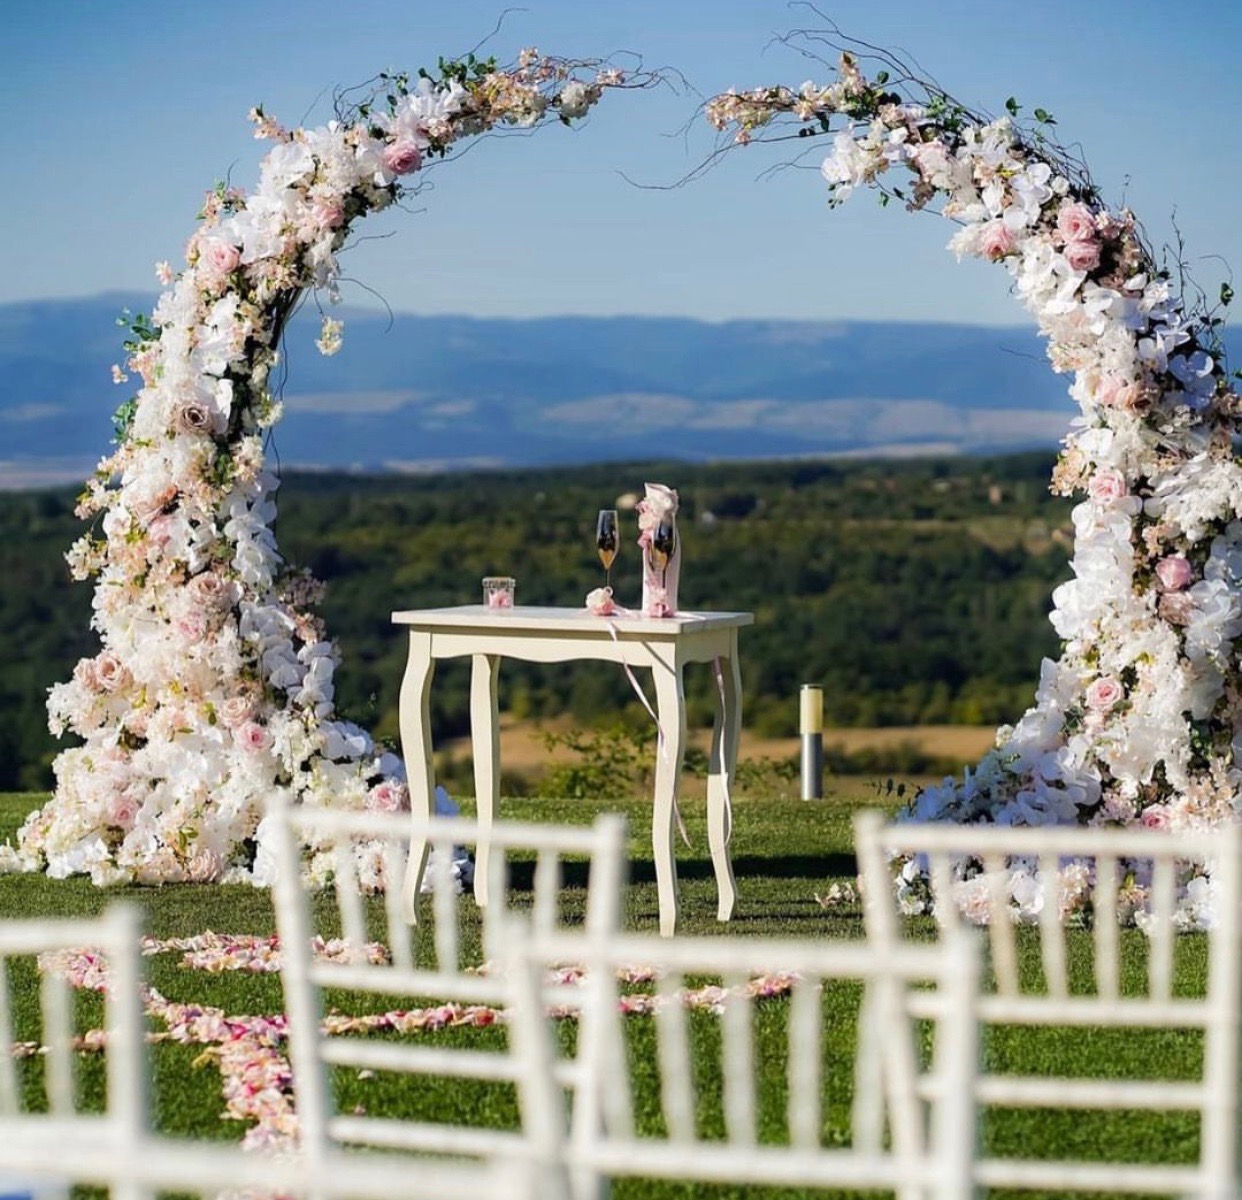 oltar za vencanje - dekoracija oltara - tifani stolice - bela staza - cvetna dekoracija IMG-8090